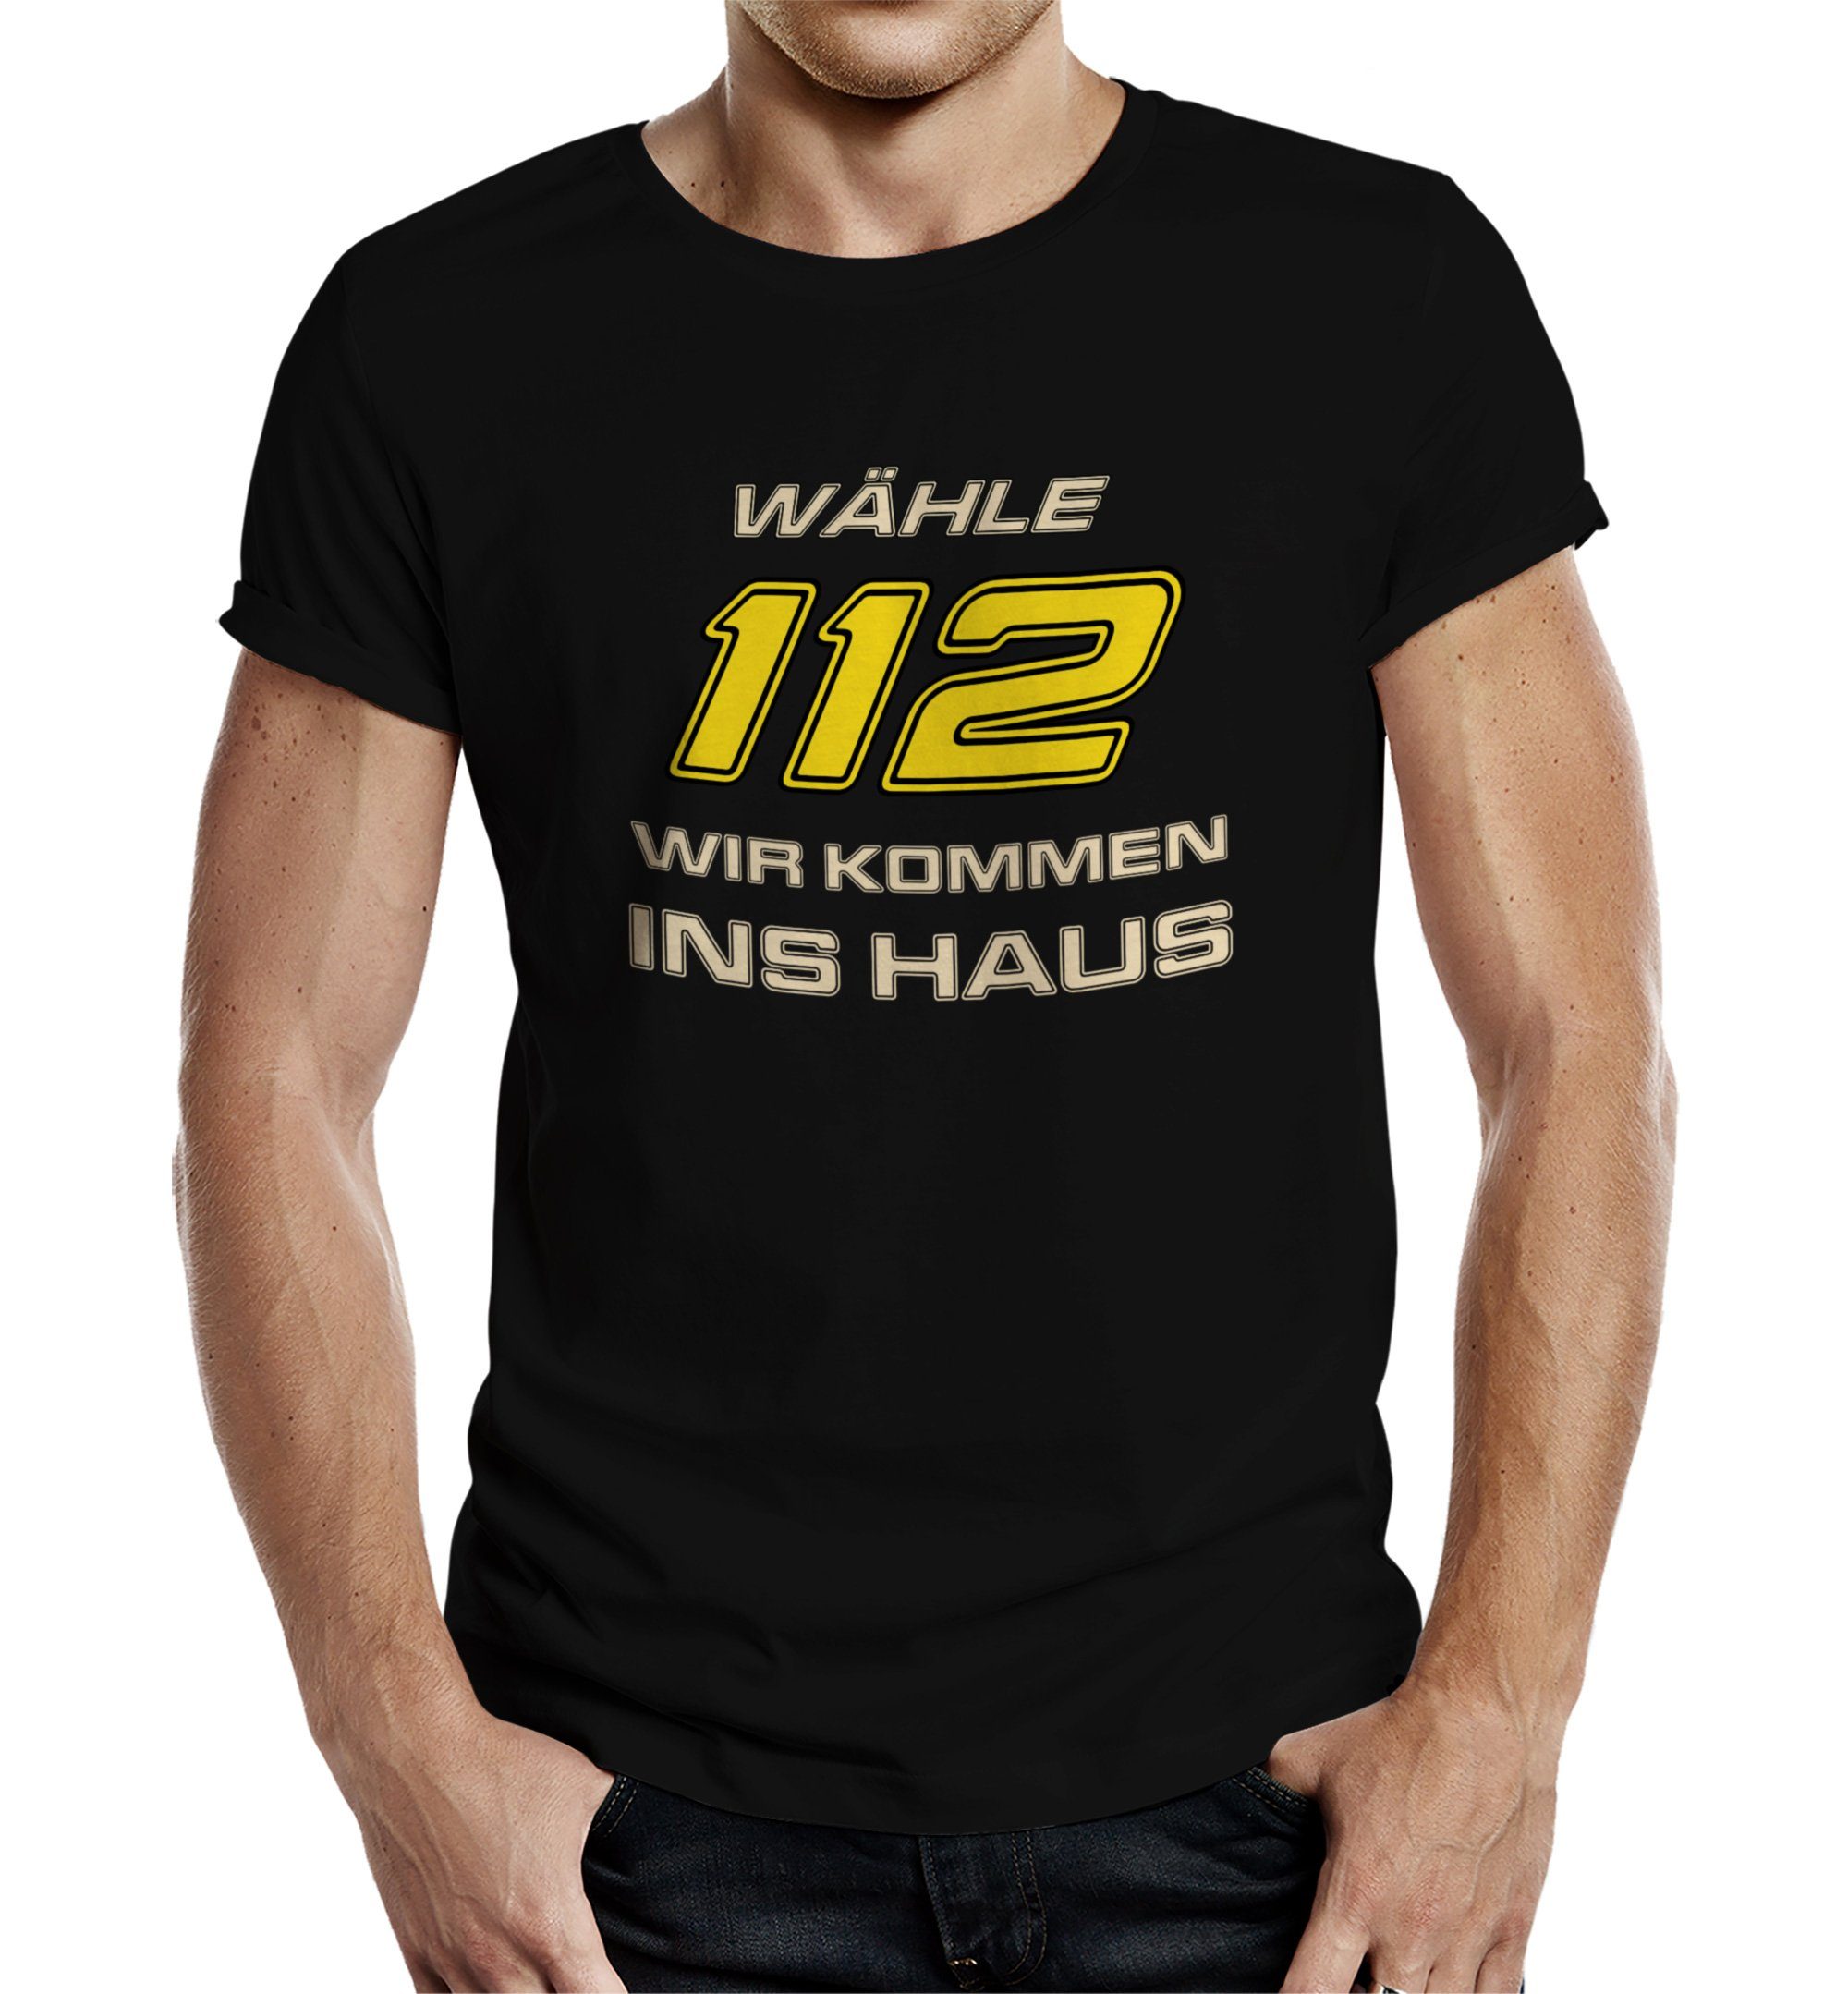 T-Shirt Wähle 112 T-Shirt Hausbesuche Feuerwehr Rahmenlos - für